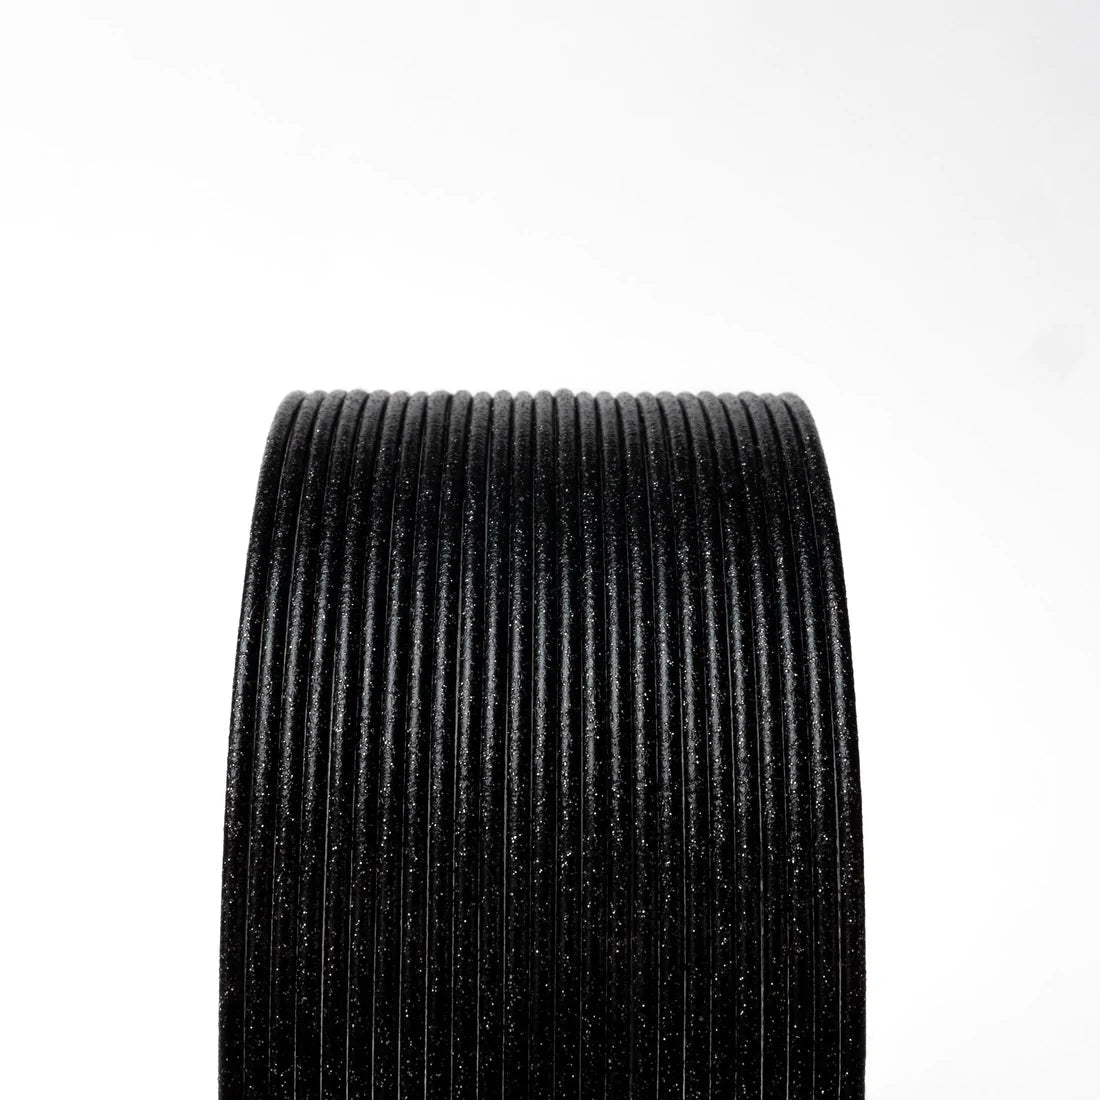 Opaque Black HTPLA  Opaque PLA Filament – Protoplant, makers of